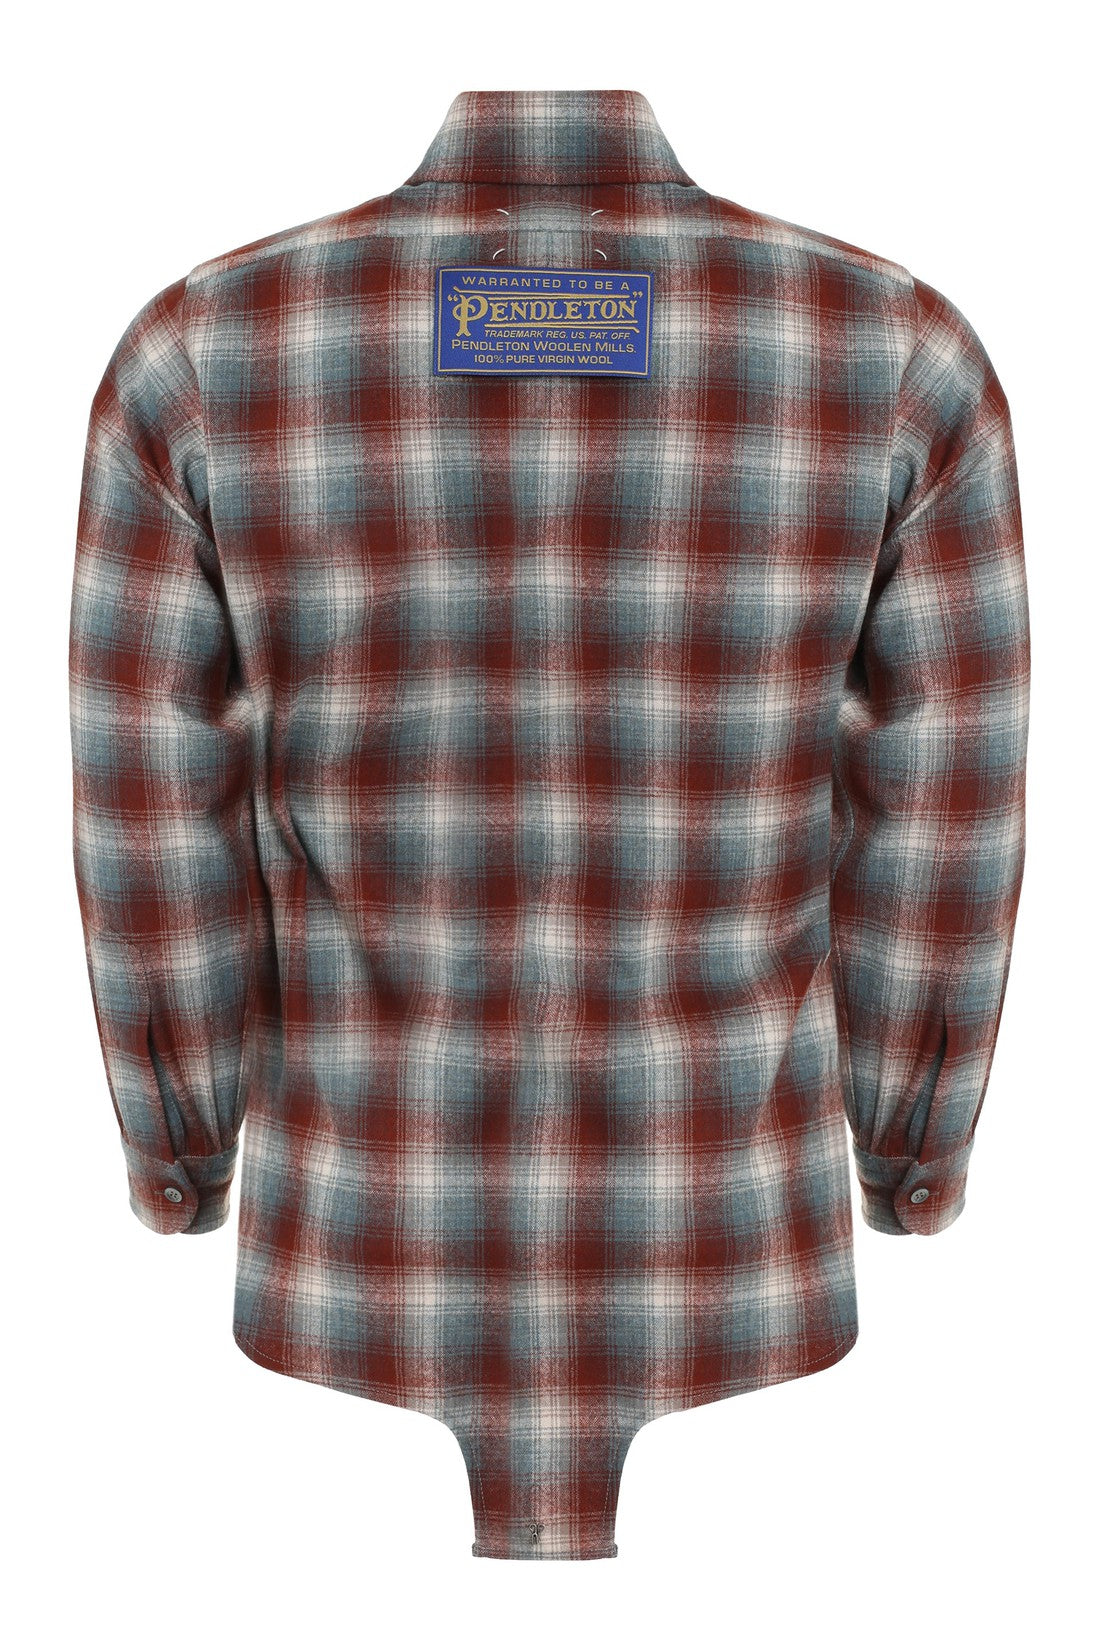 Maison Margiela-OUTLET-SALE-Maison Margiela X Pendleton - Checked wool shirt-ARCHIVIST